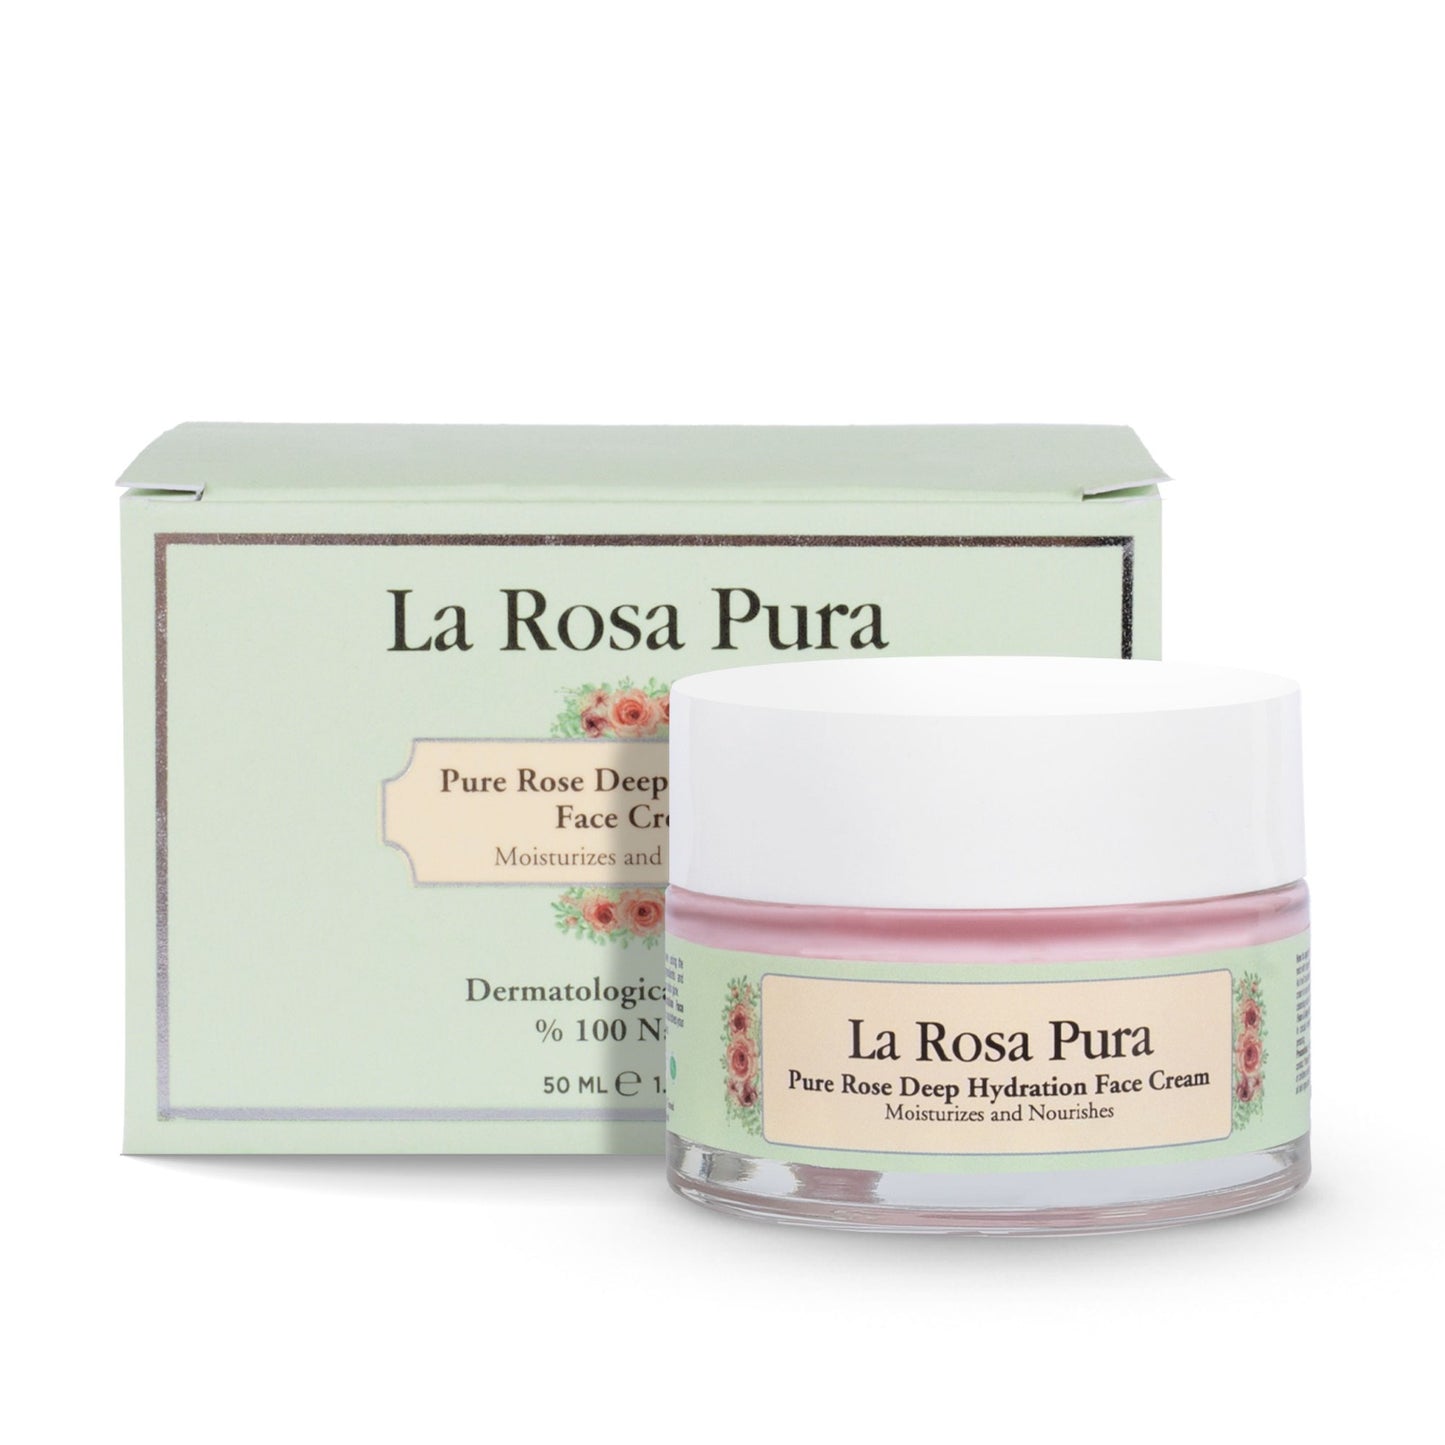 Unique Touch – La Rosa Pura Deep Hydration Cream